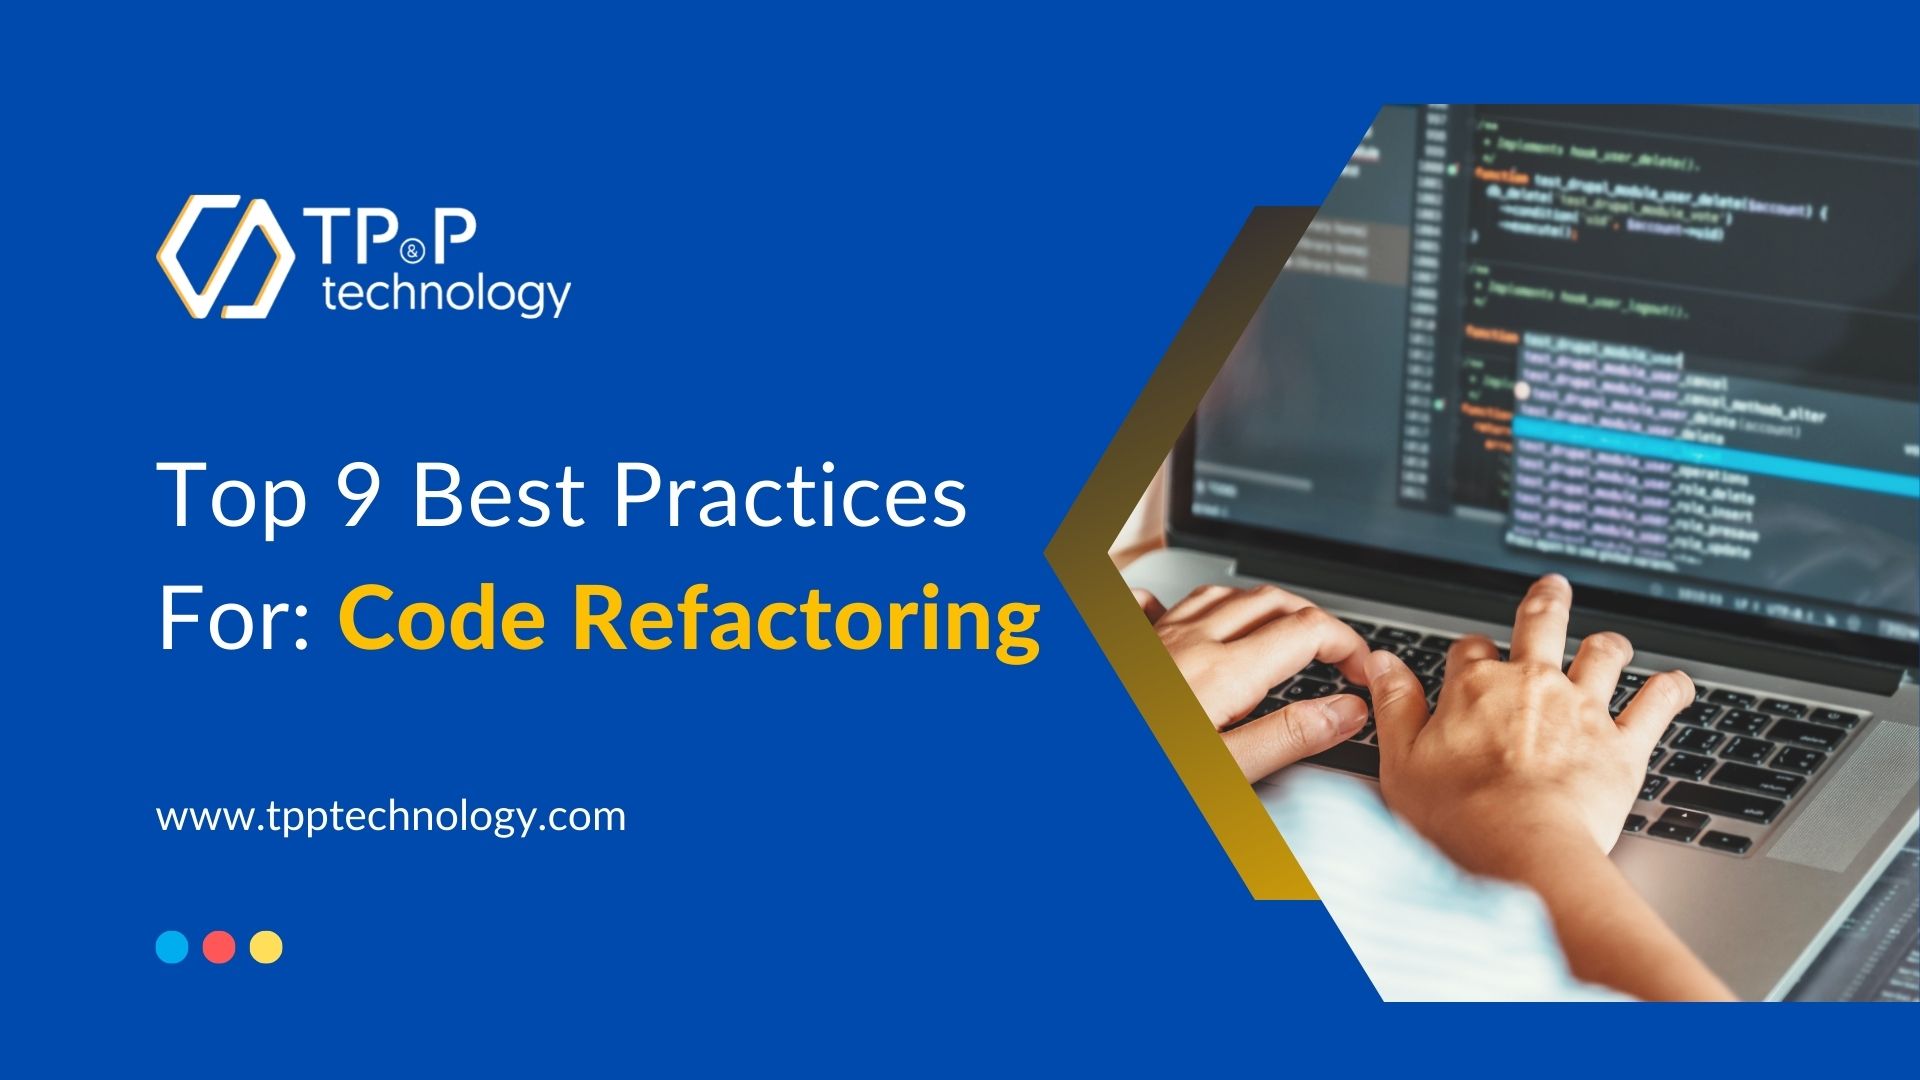 Top 9 Best Practices For Code Refactoring